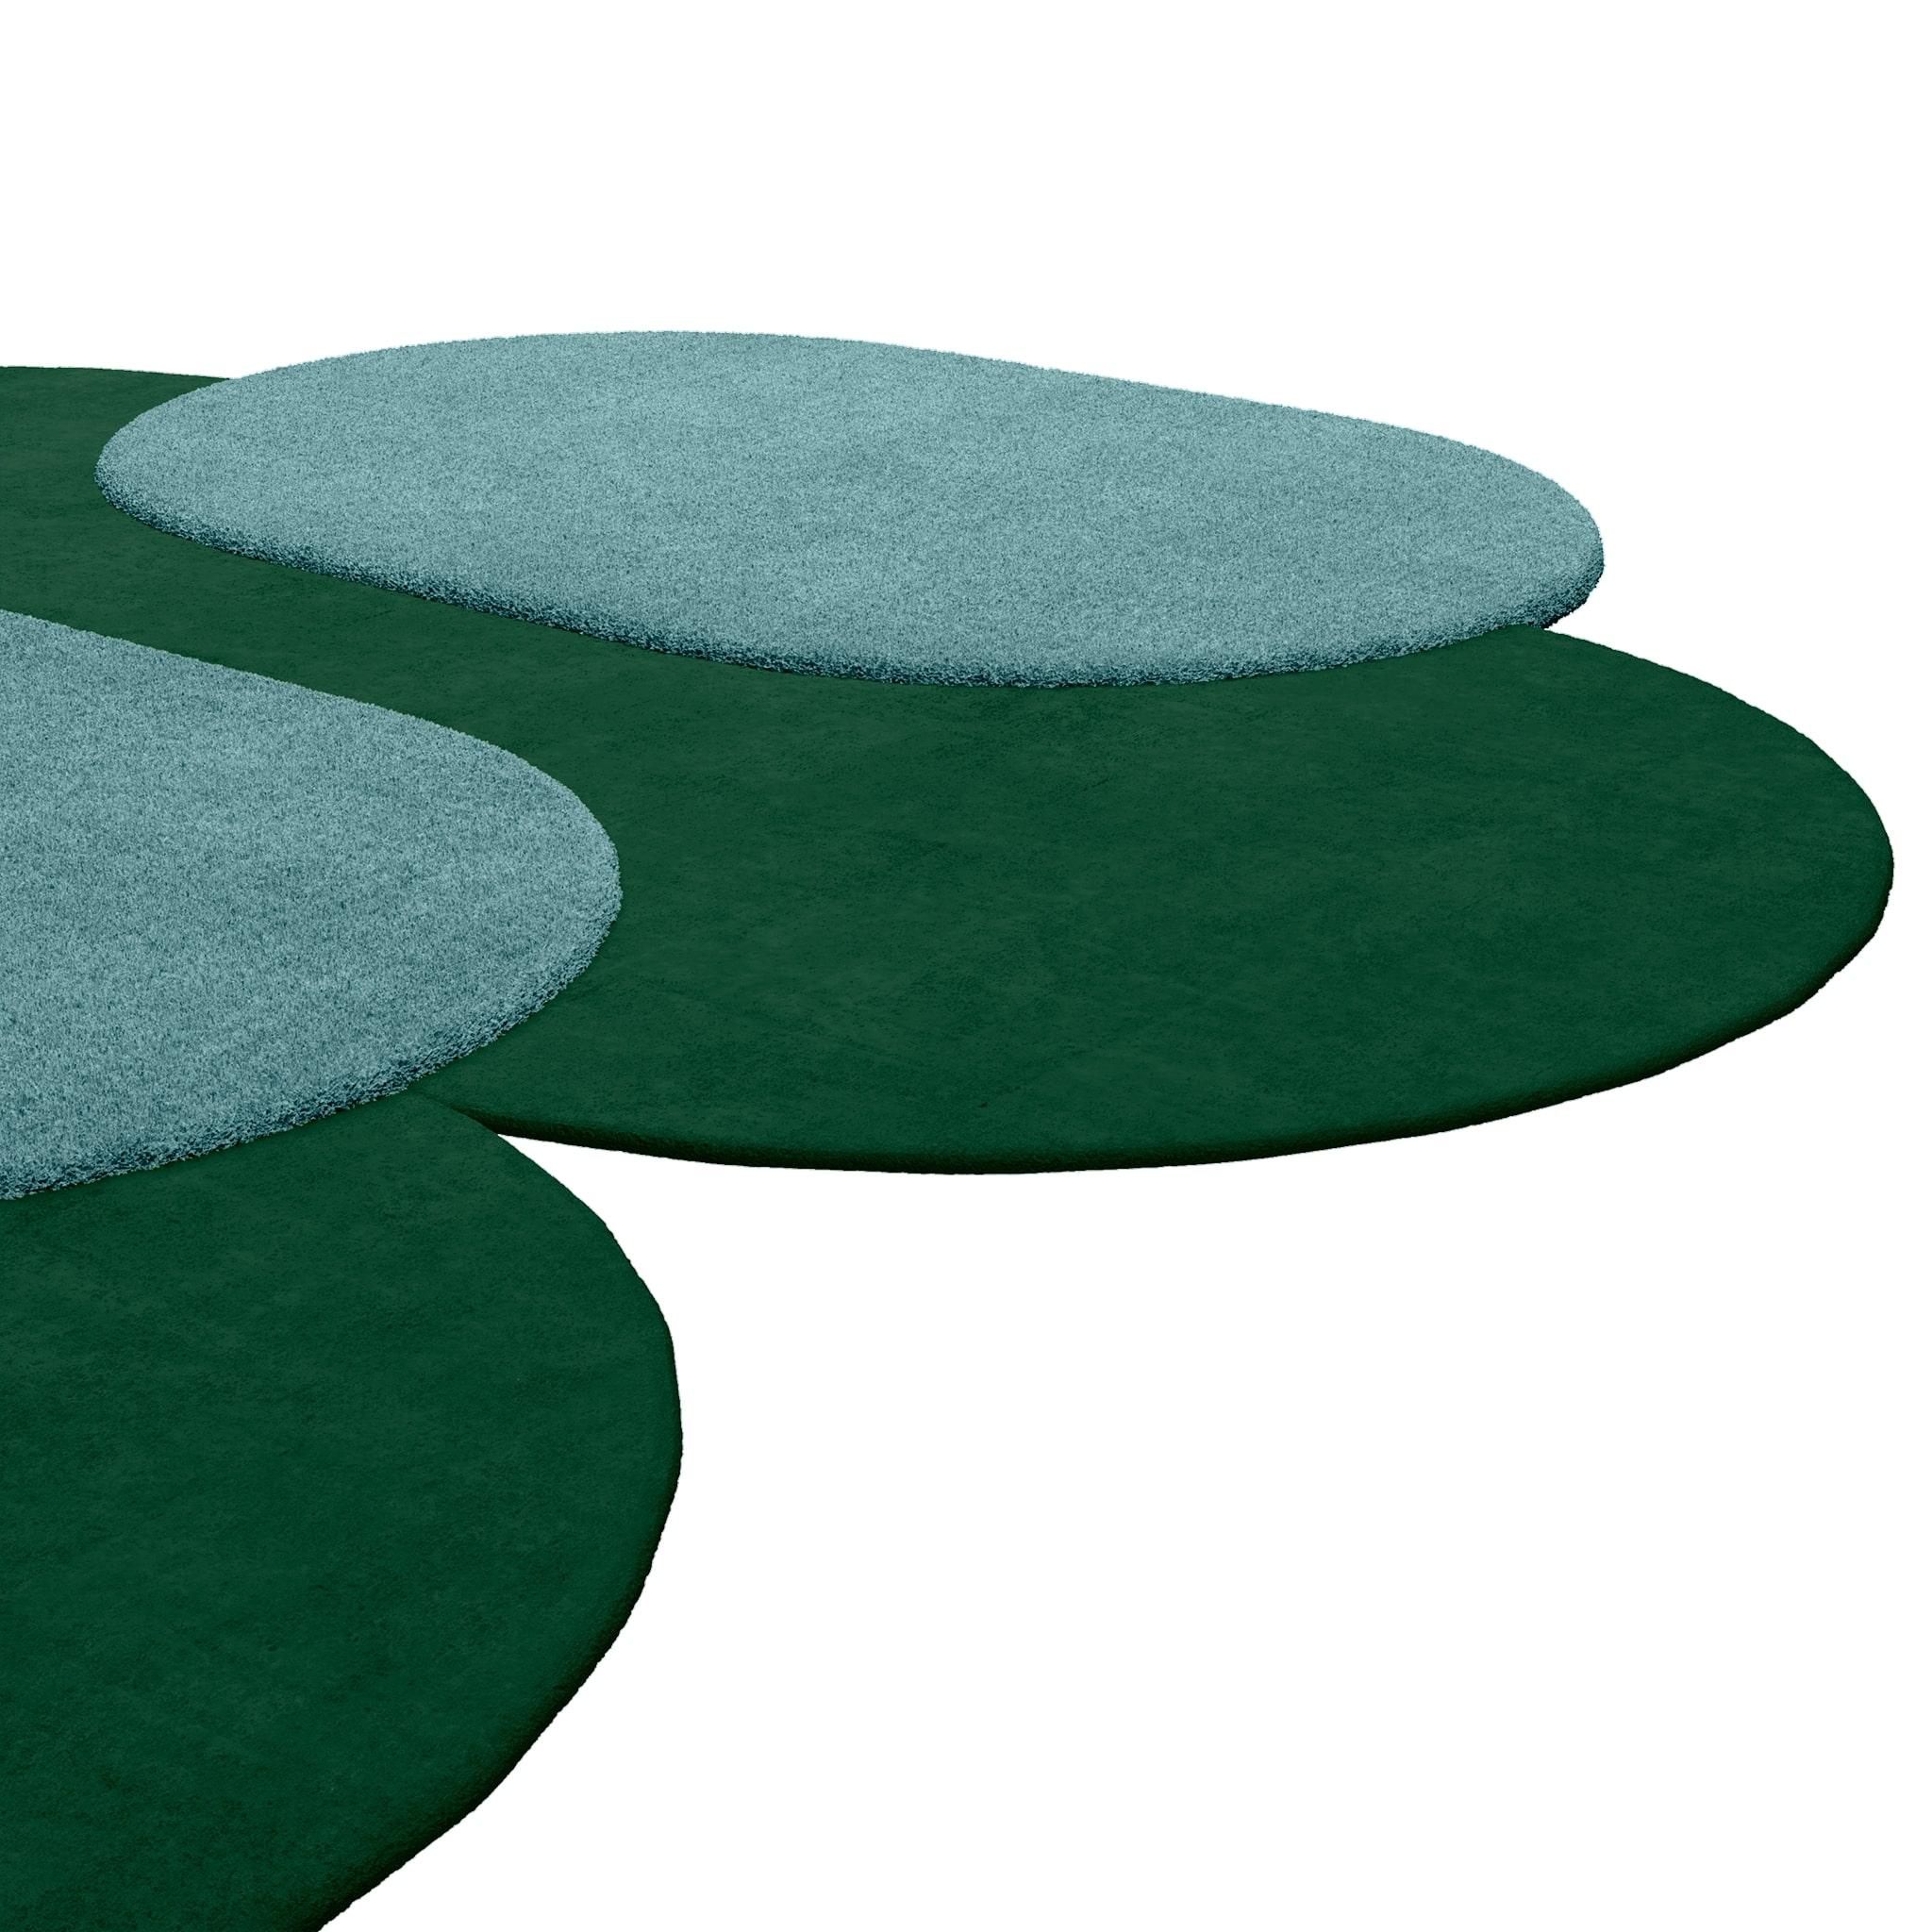 Tapis Shaped #048 ist ein Teppich im modernen Stil in trübem Grün und Hellblau, einer klassischen und doch raffinierten Farbkombination.
Mit seiner unregelmäßigen Form, die ovale Kreise mit kontrastierenden Farben gegenüberstellt, ist es ein